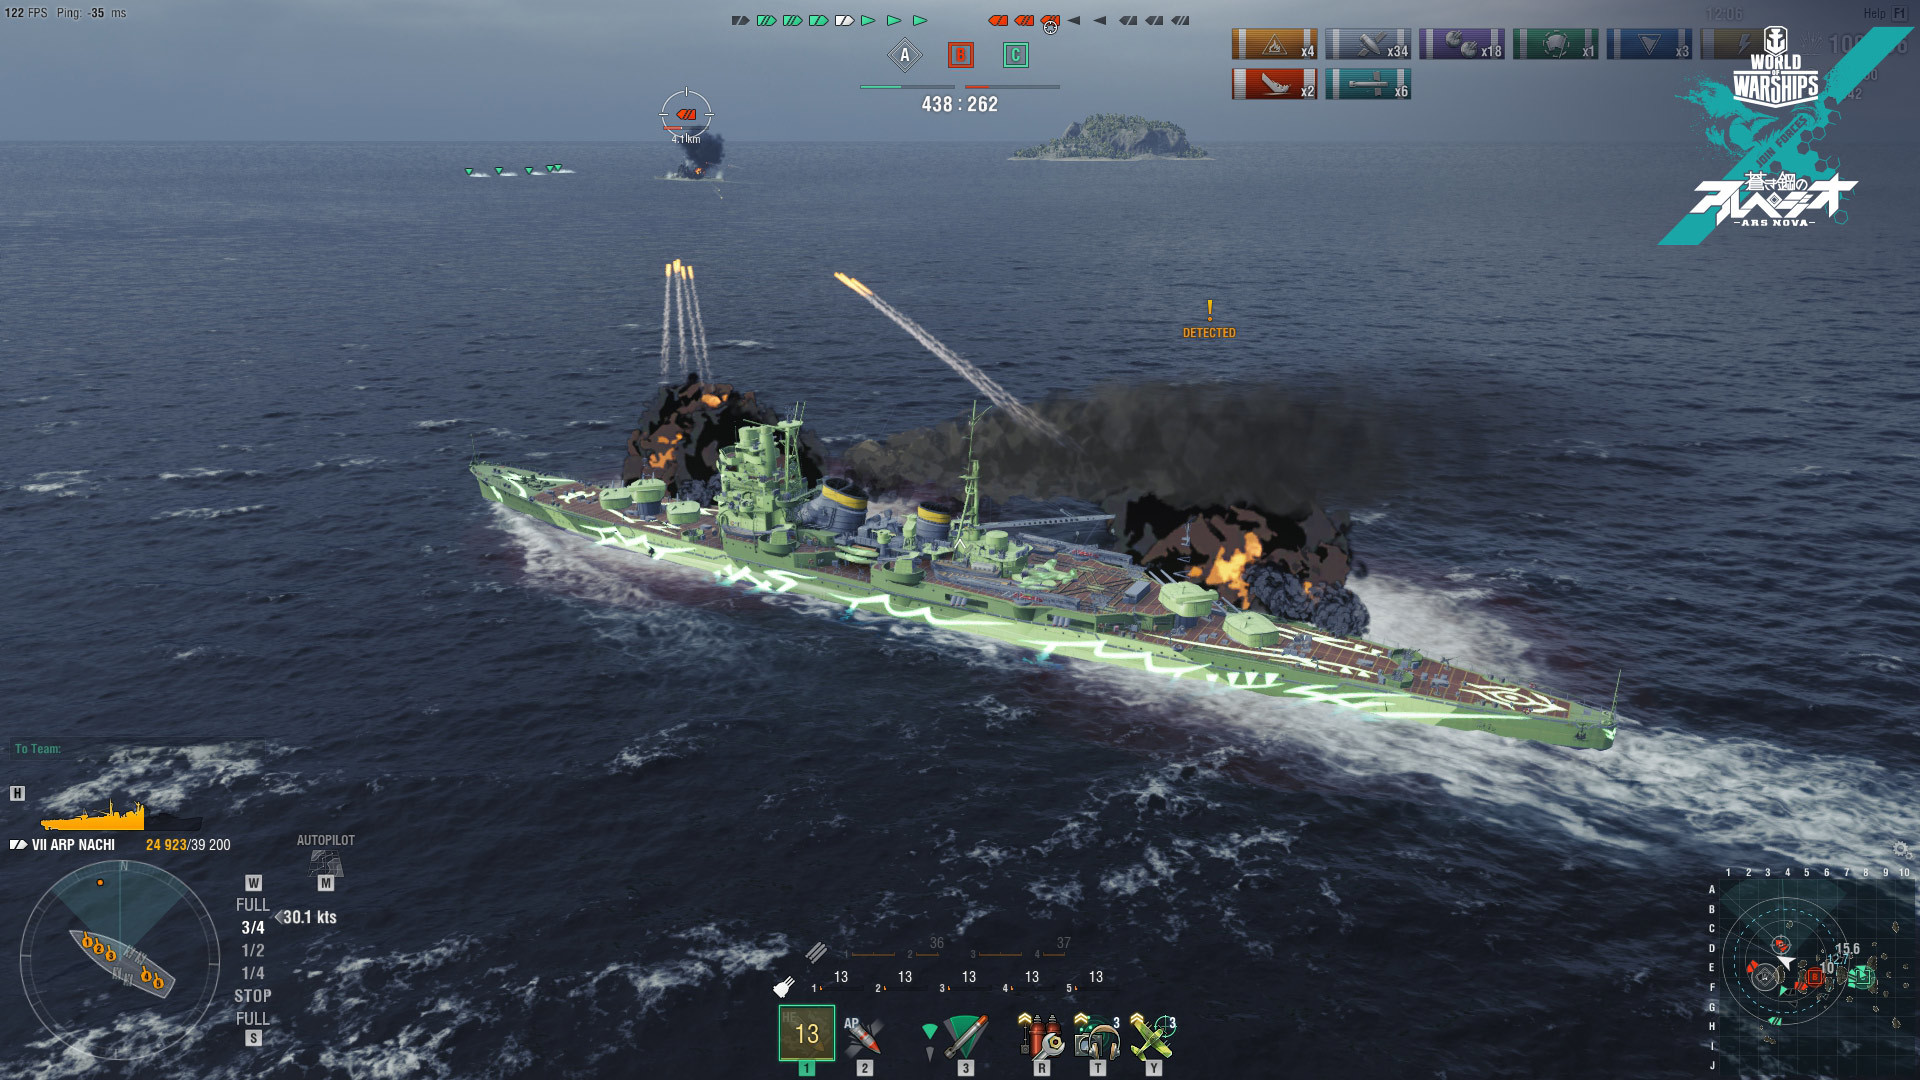 World of Warships — ARP Nachi screenshot